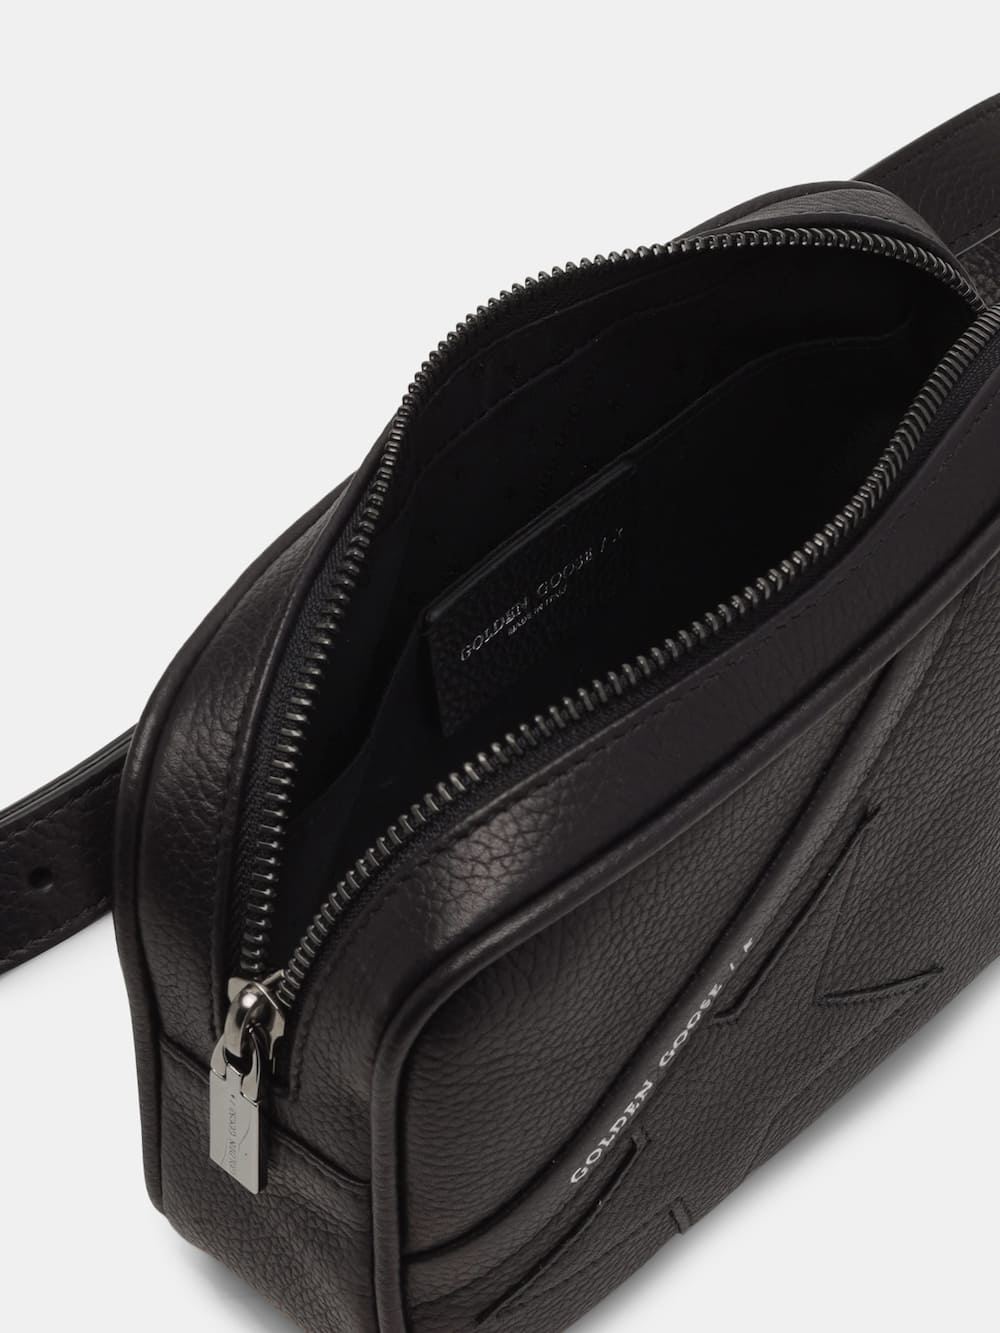 Golden Goose - Black Star Belt Bag made of hammered leather in 